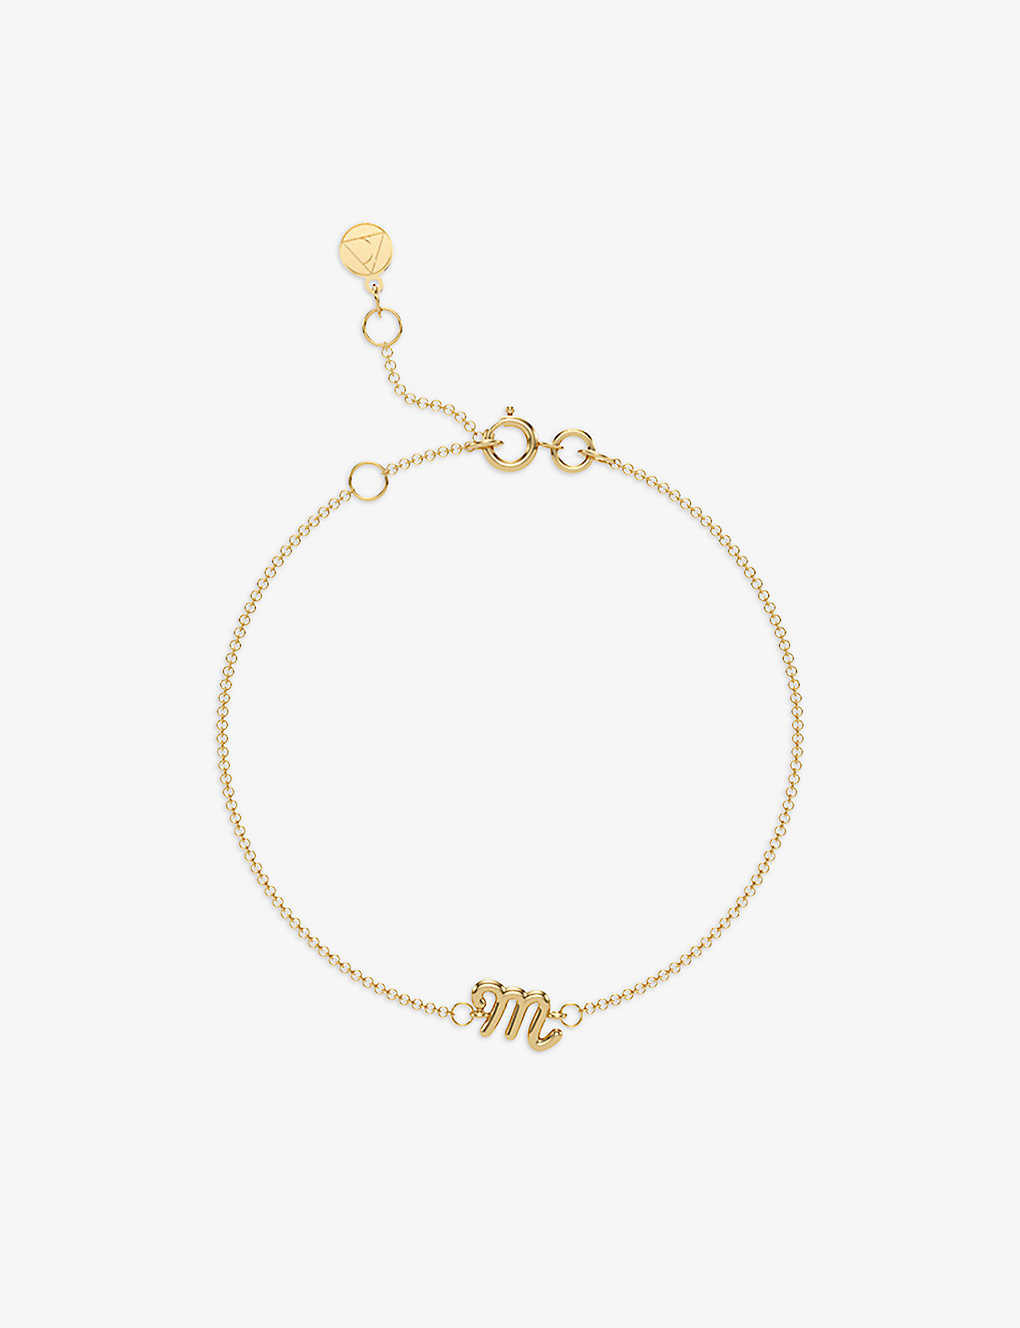 The Alkemistry Scorpio Zodiac 18ct Recycled Yellow Gold Bracelet